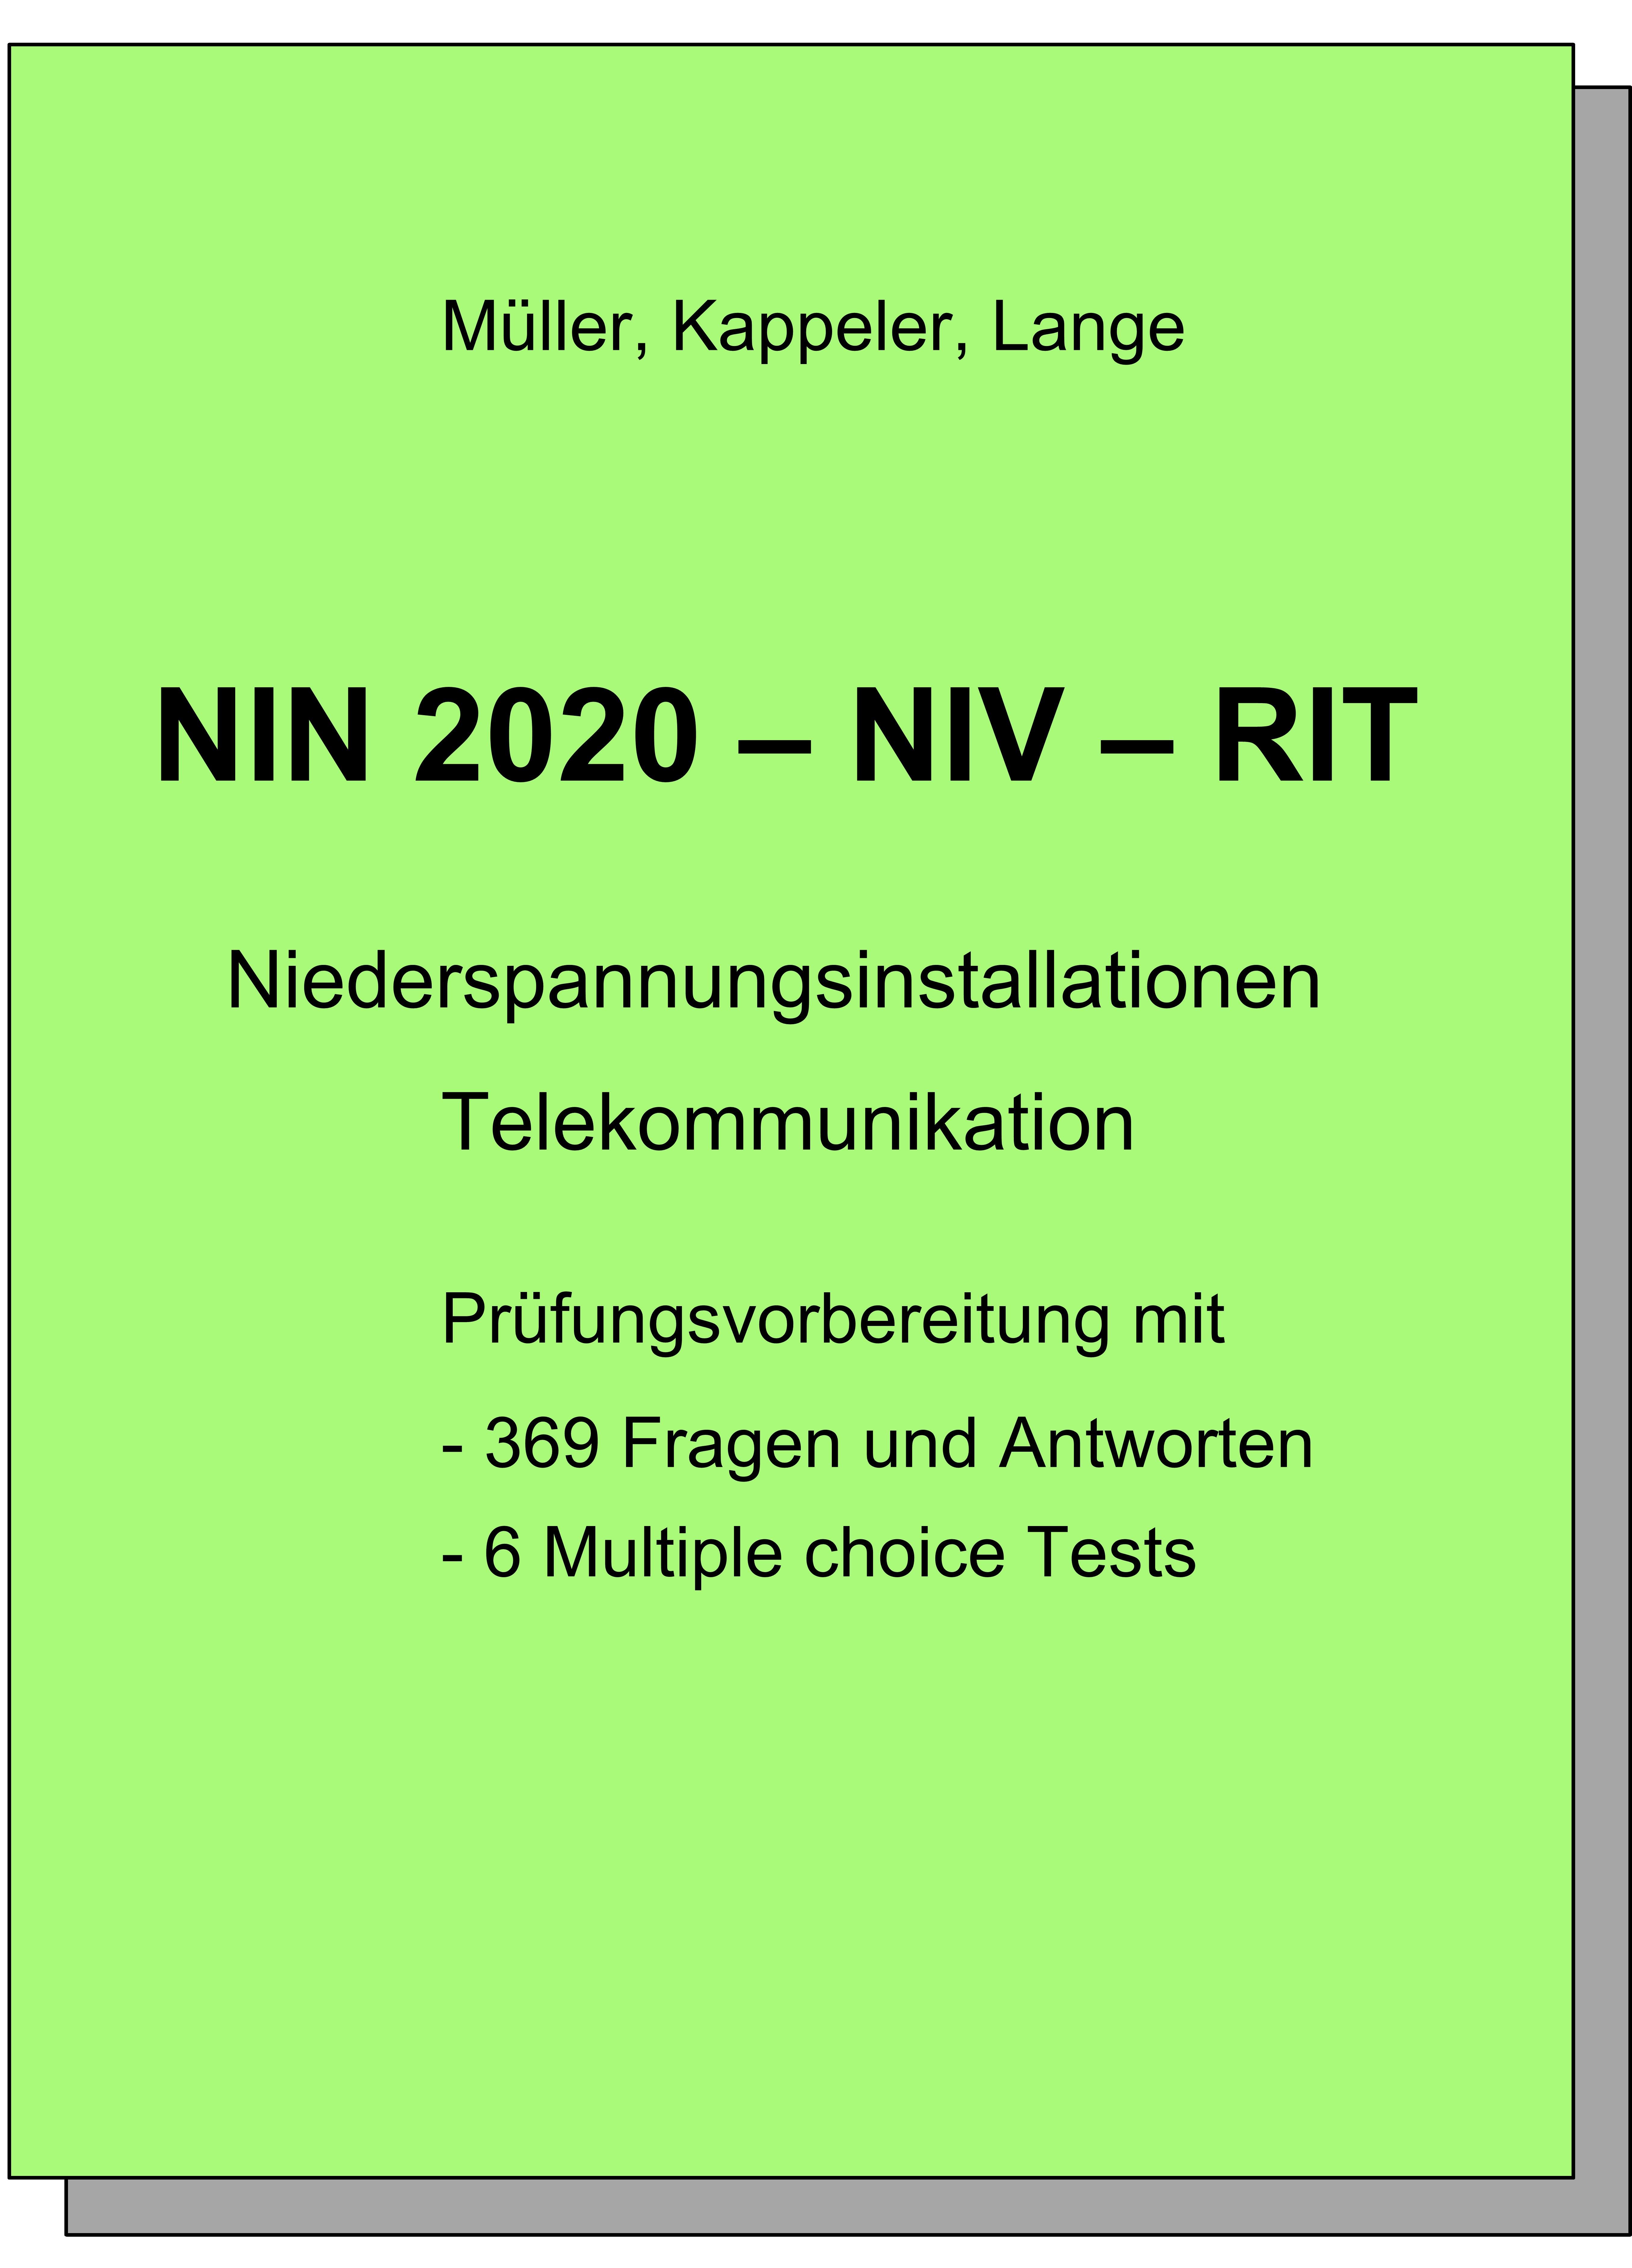 NIN 2020 - NIV - RIT